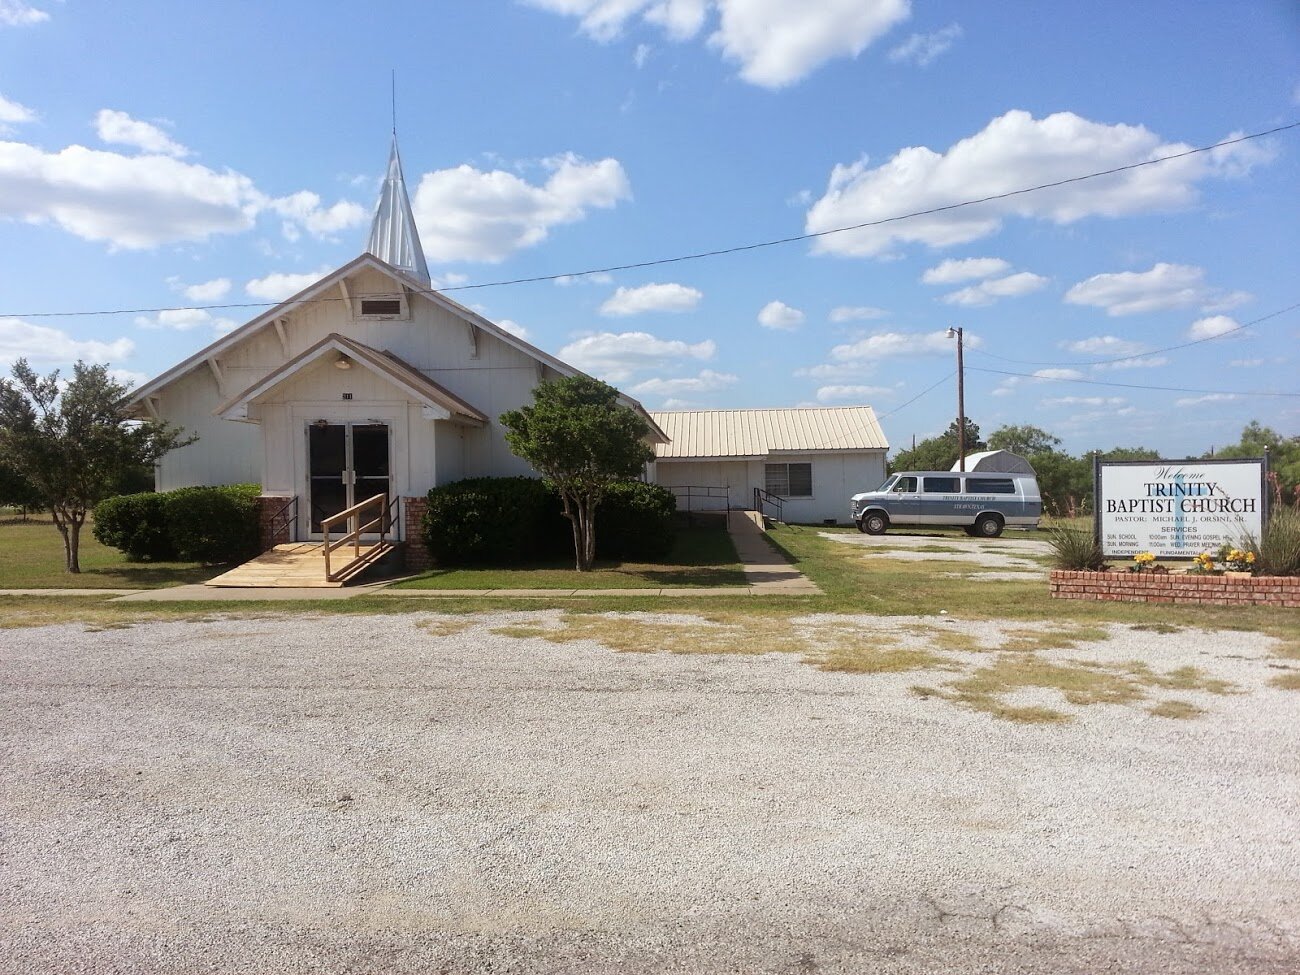 Trinity Baptist Church, Strawn, TX, Father’s Day 2013